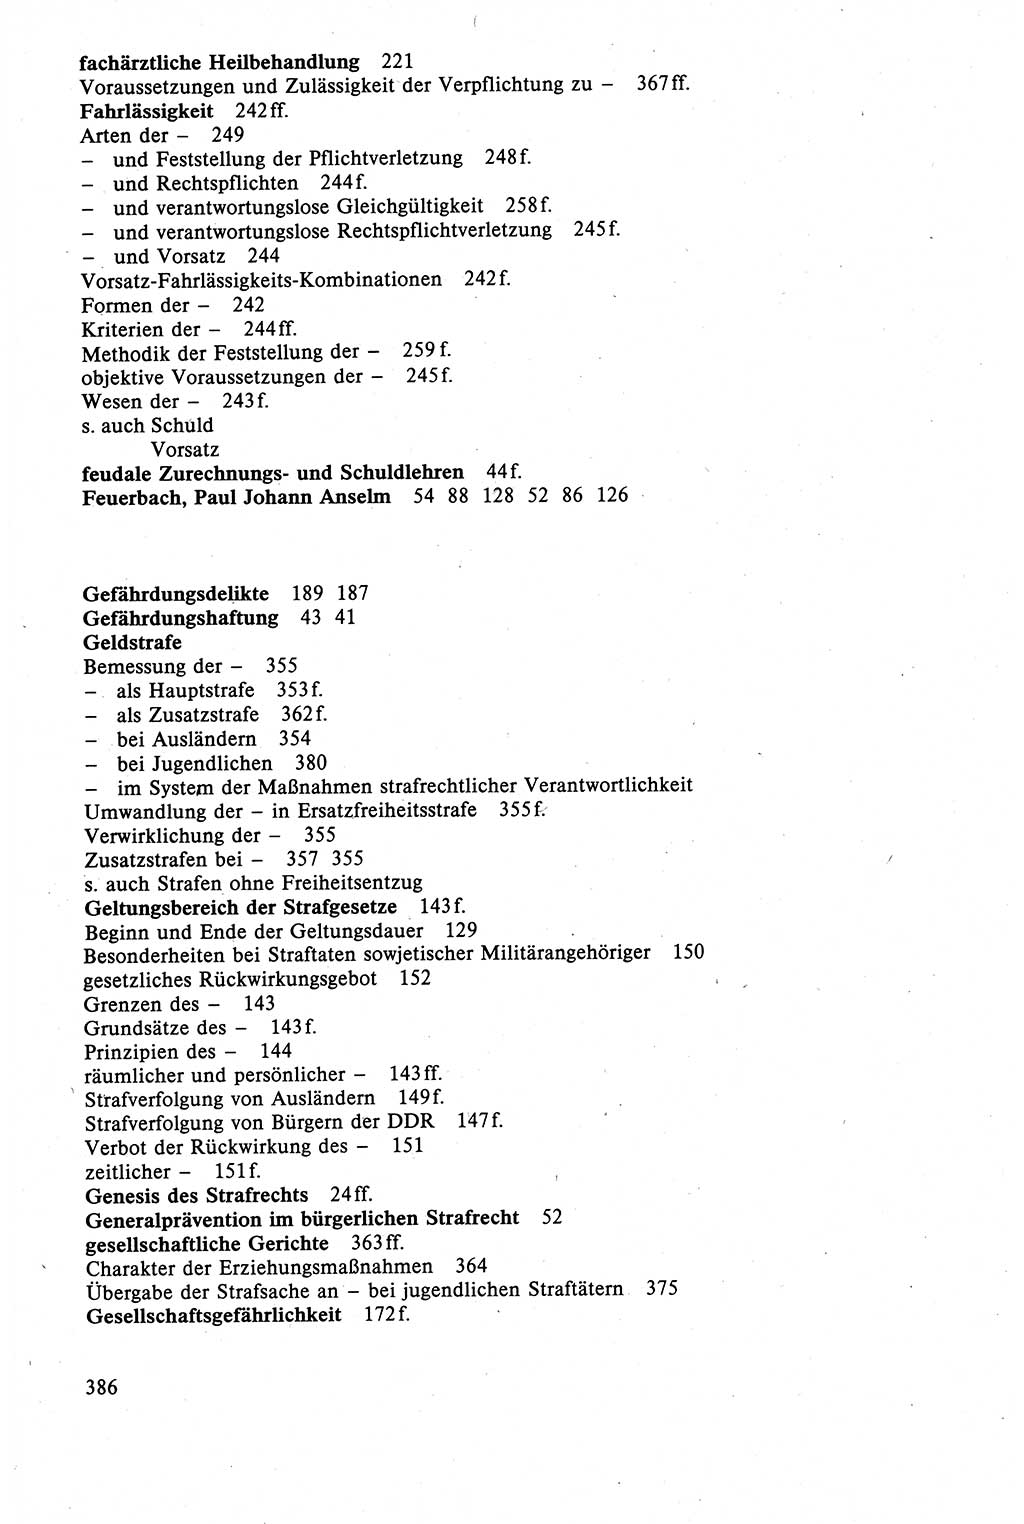 Strafrecht der DDR (Deutsche Demokratische Republik), Lehrbuch 1988, Seite 386 (Strafr. DDR Lb. 1988, S. 386)